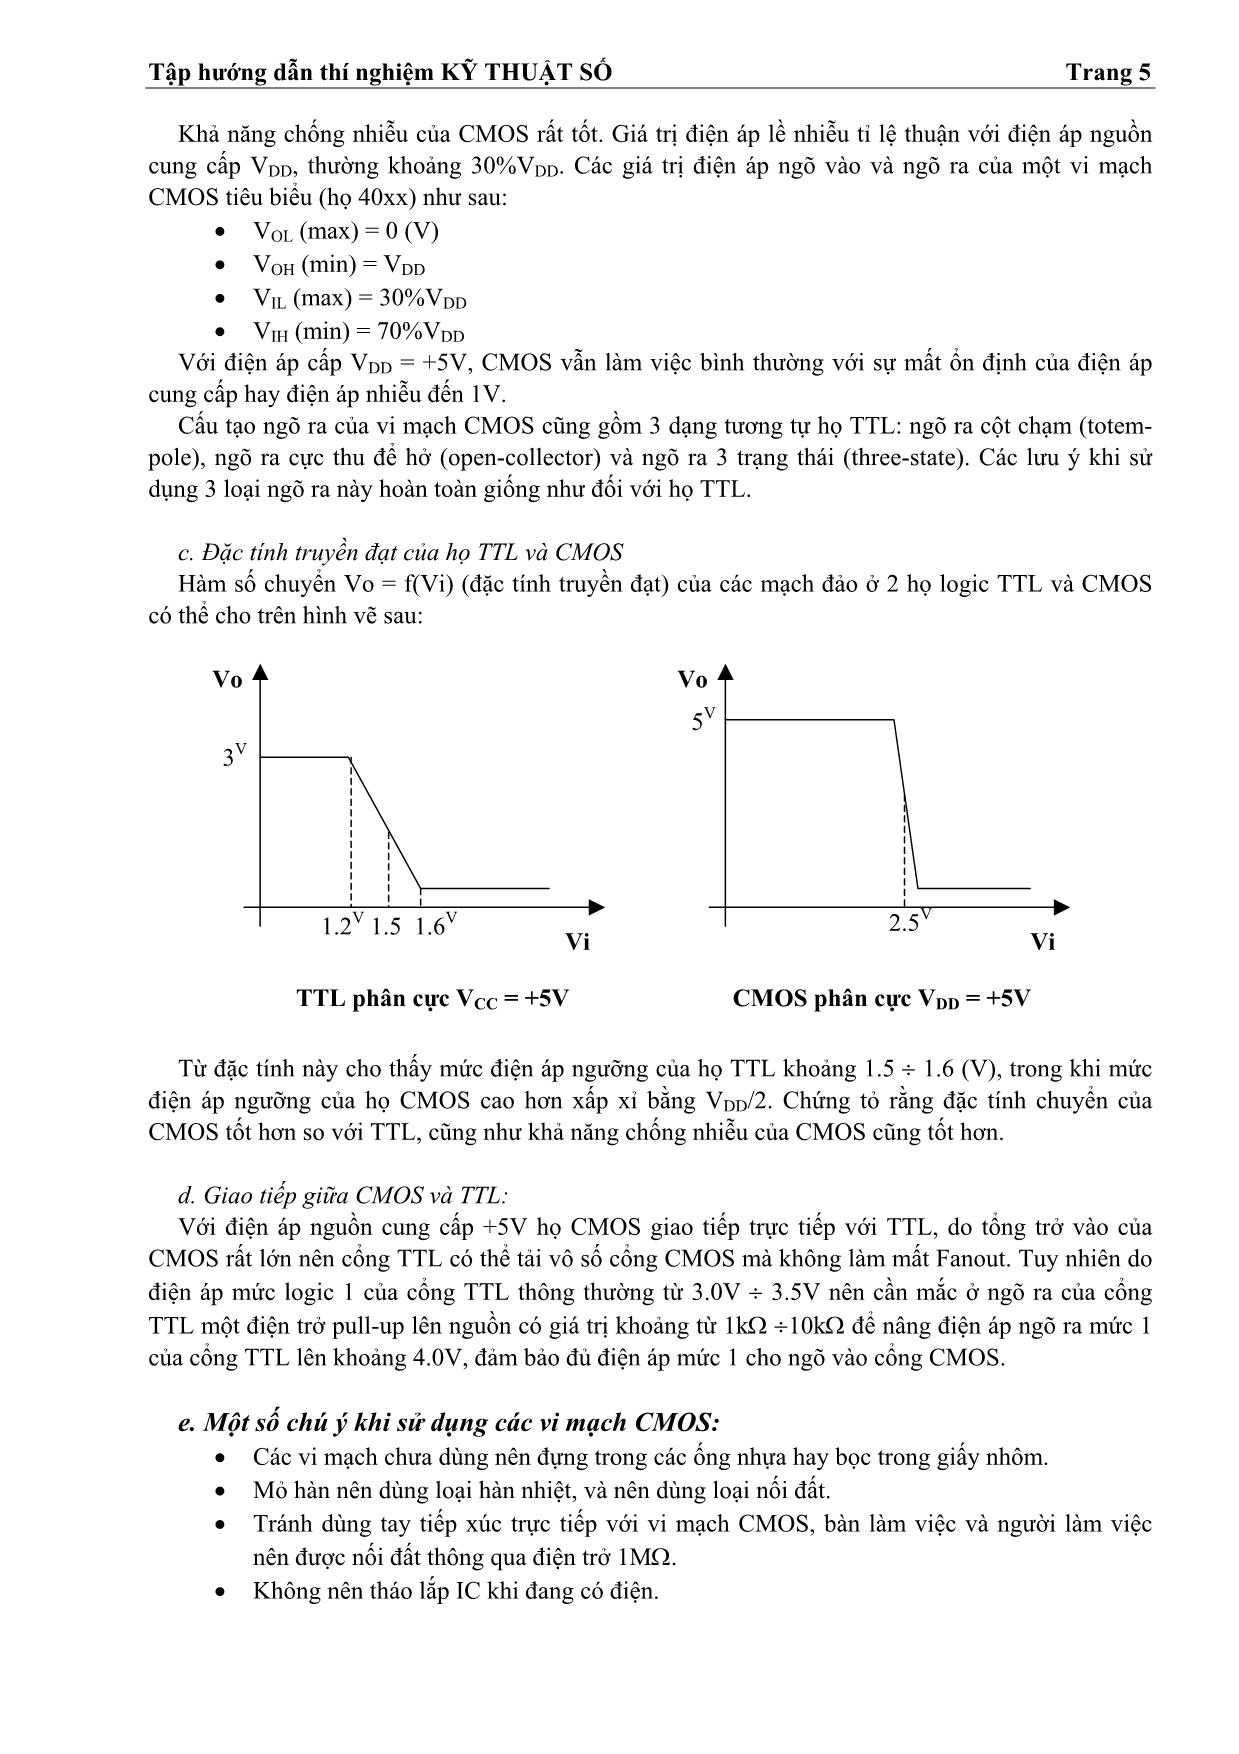 Tập hướng dẫn thí nghiệm kỹ thuật số trang 5